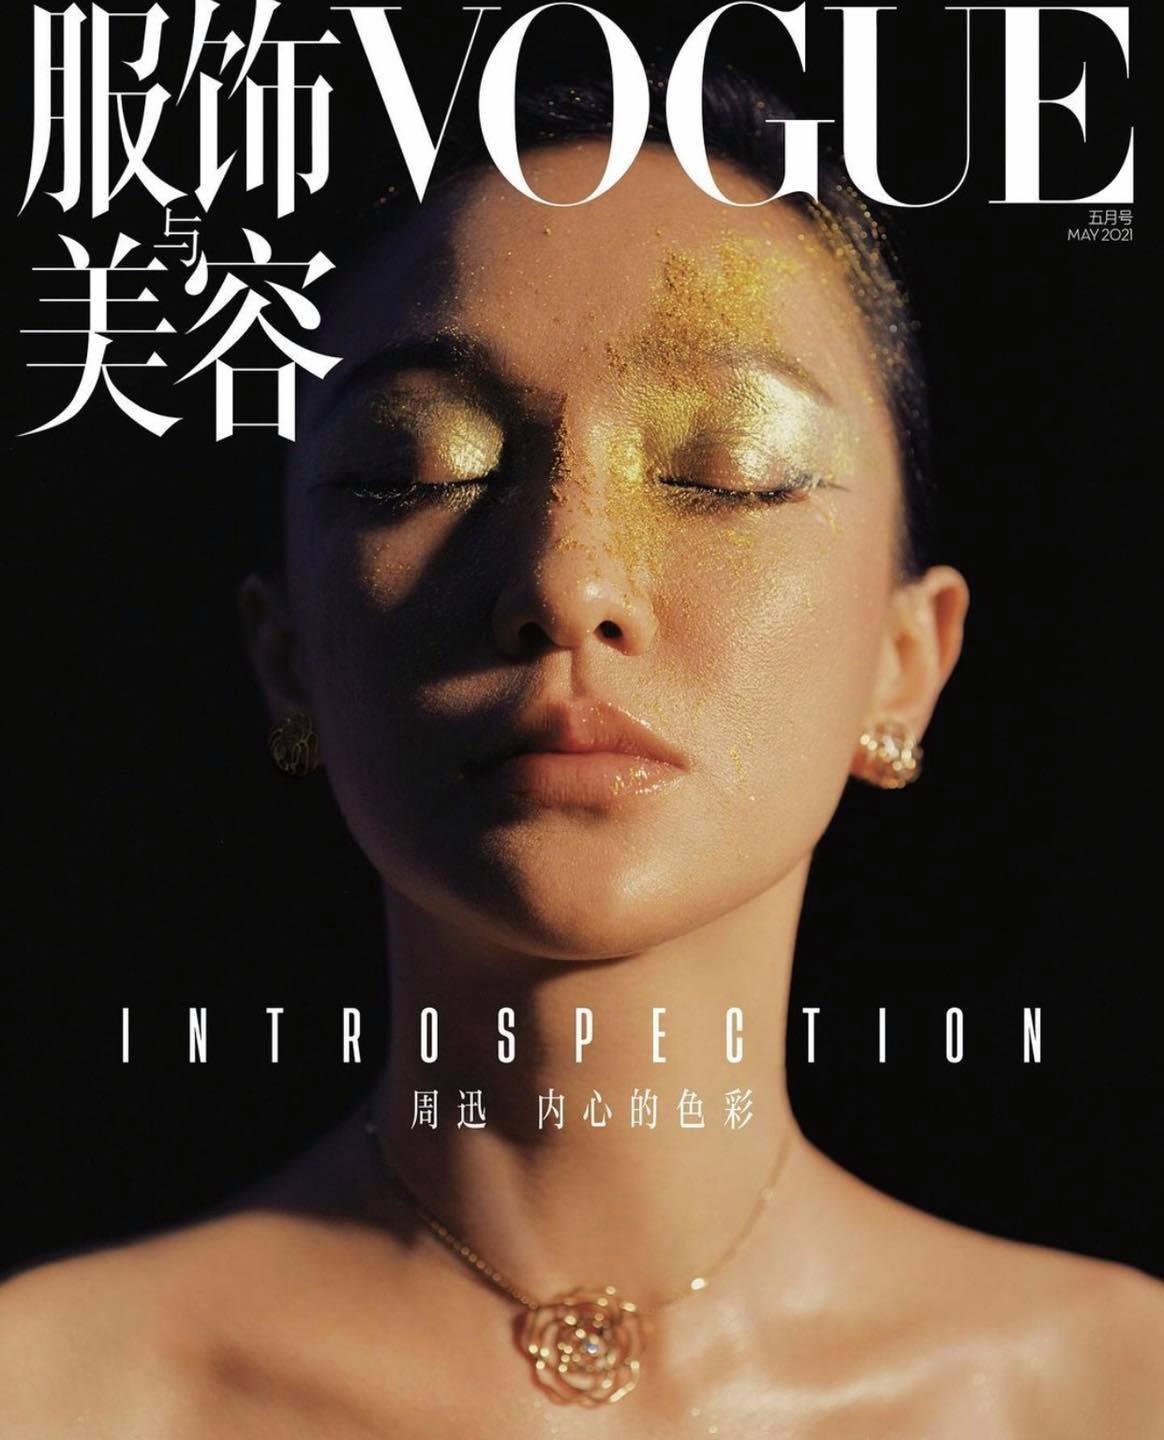 Leslie Zhang, người chụp ảnh bìa Vogue tháng 5, là một NAG thời trang tại Trung Quốc. Cô nổi tiếng với những bức ảnh có bố cực siêu thực và màu sắc rực rỡ